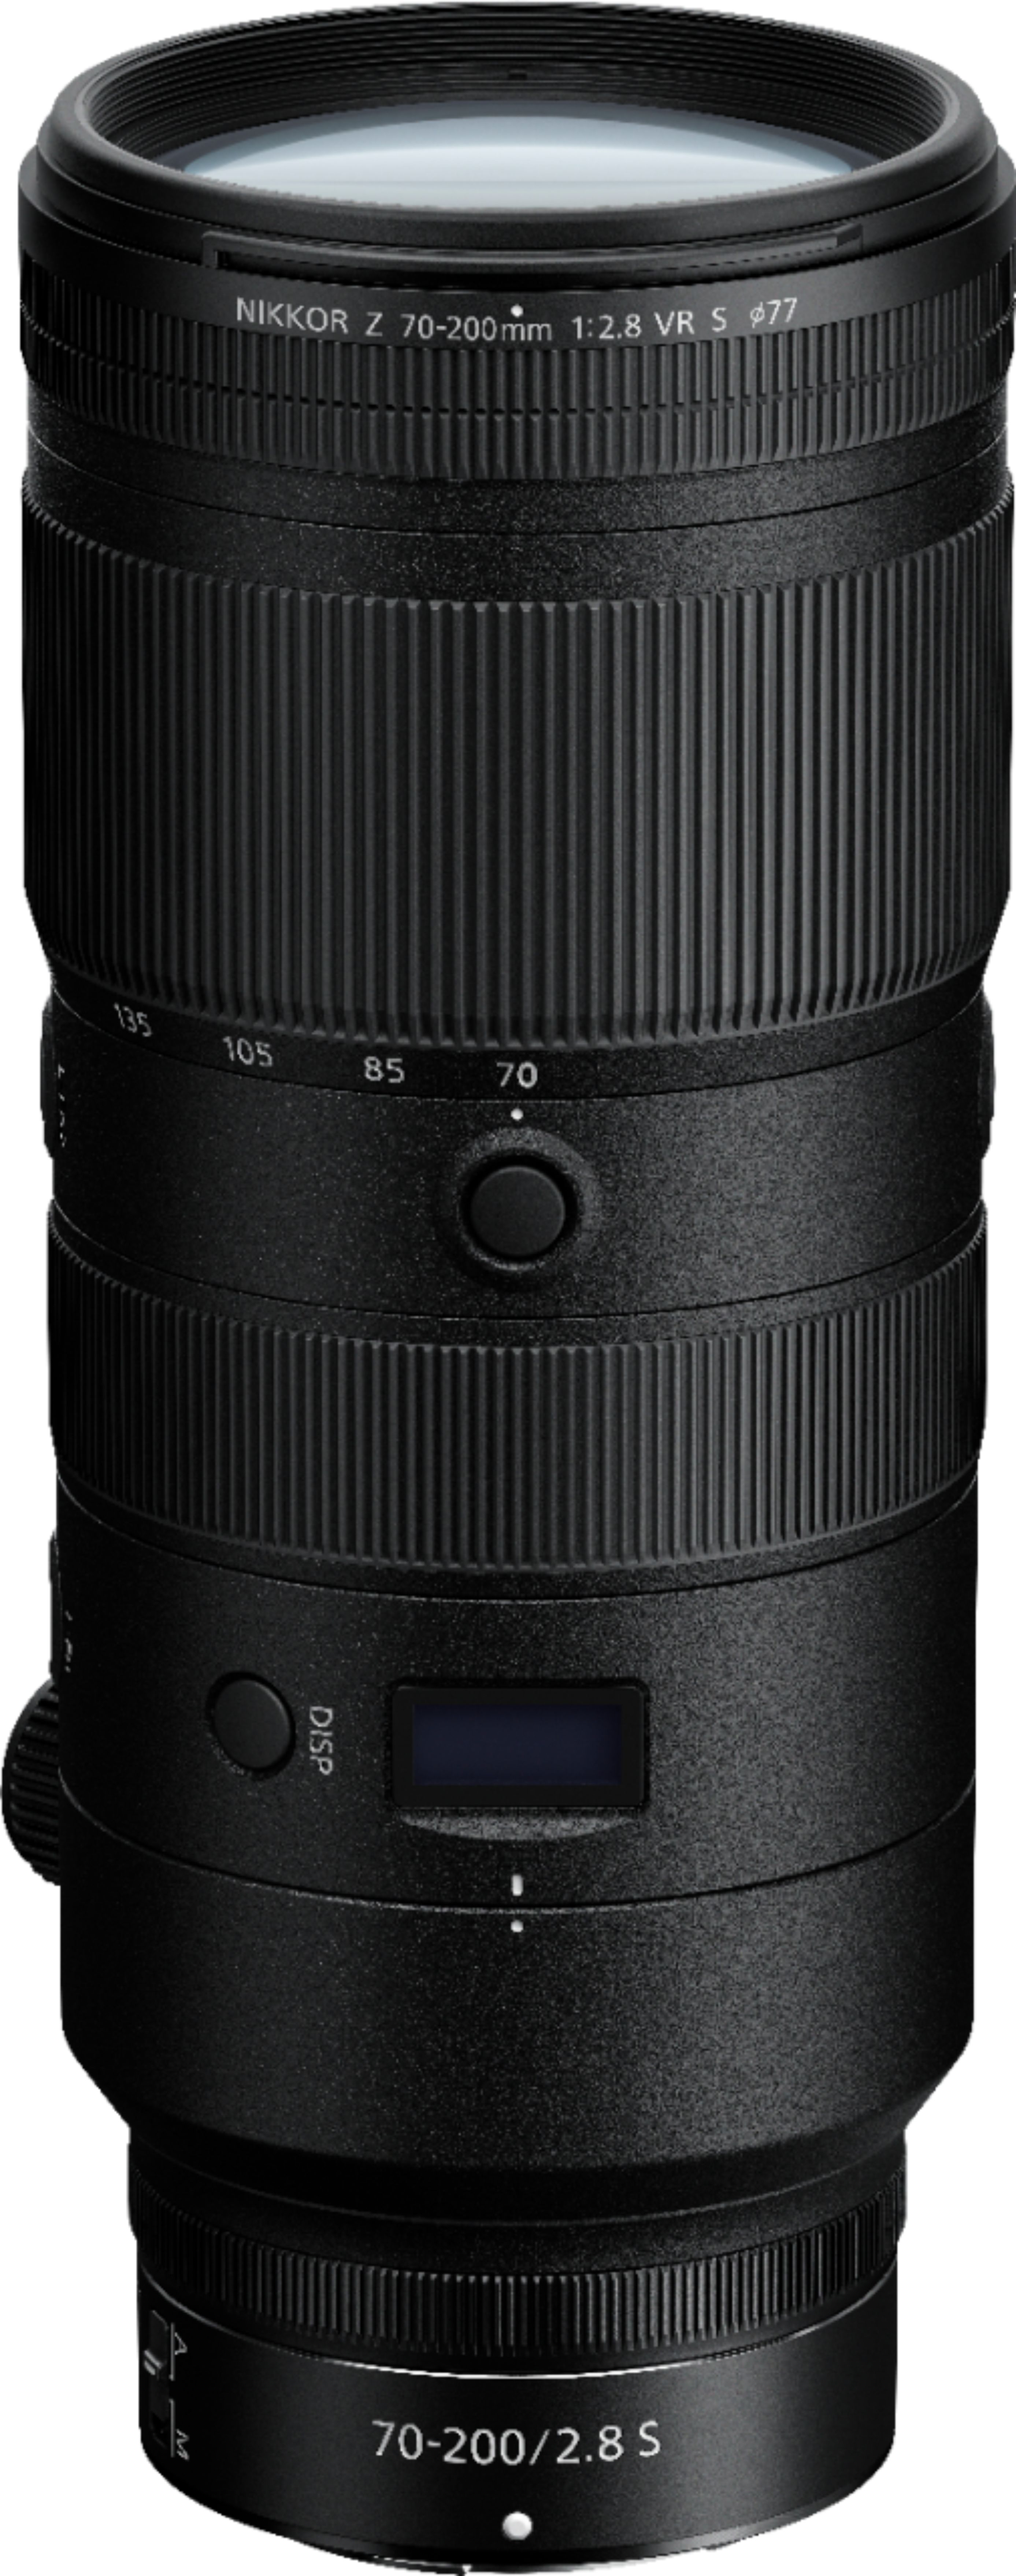 NIKKOR Z 70-200mm f/2.8 VR S Optical Telephoto Zoom Lens for Nikon Z  Cameras Black 20091 - Best Buy